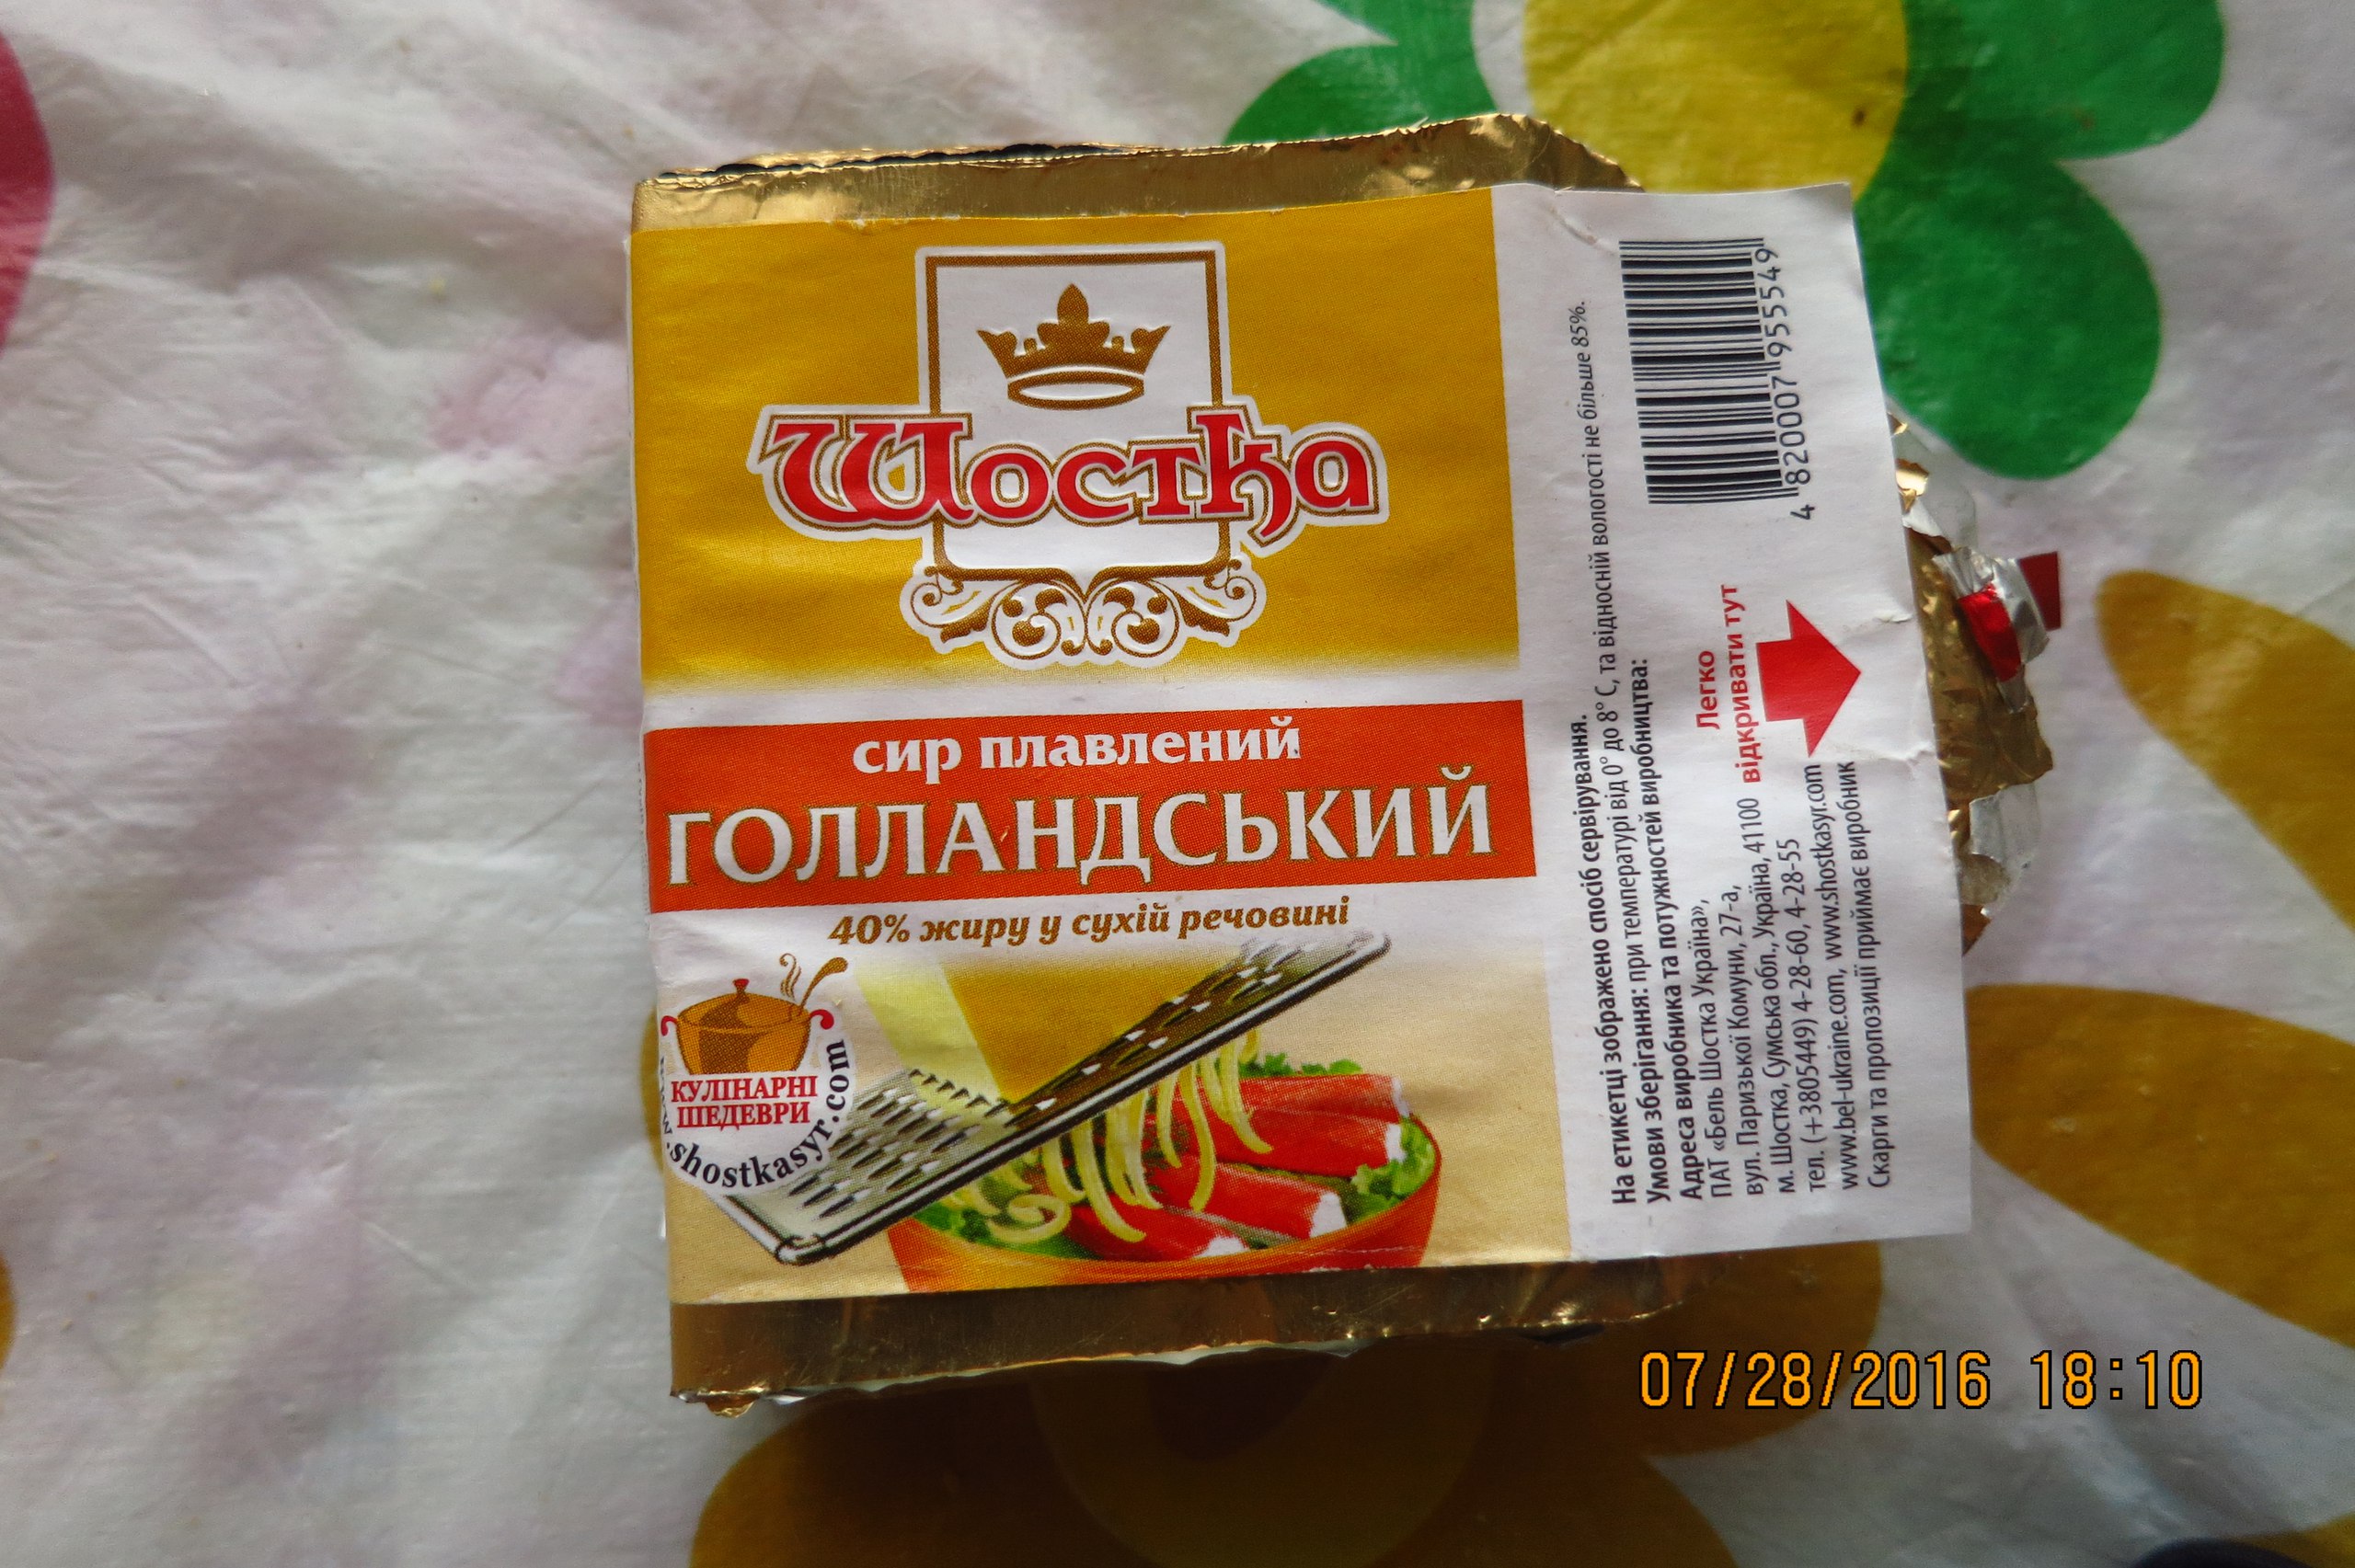 Сир з цвіллю: як на Миколаївщині труять покупців - фото 1